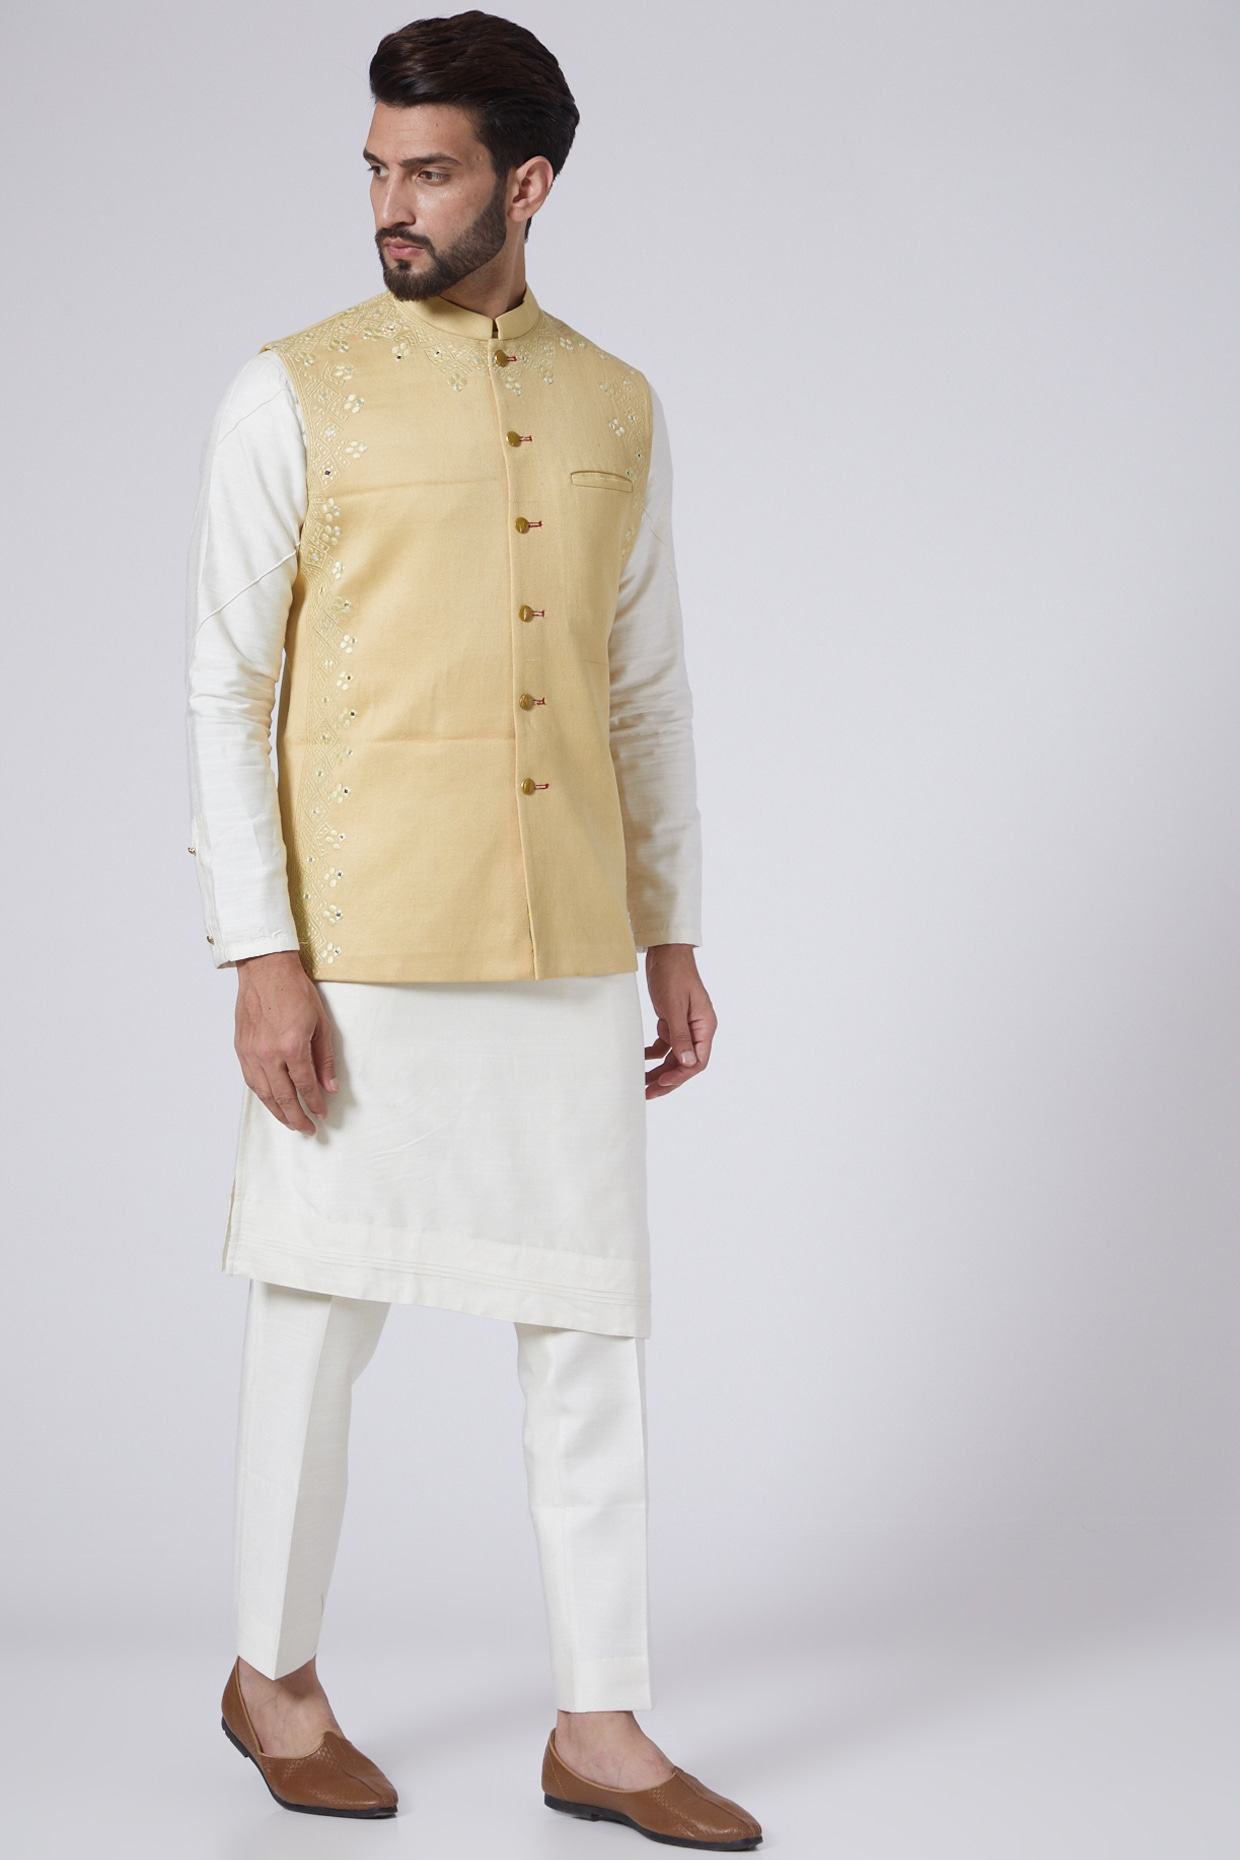 Buy Wintage Men's Banarasi Rayon Cotton Golden Modi Nehru Jacket